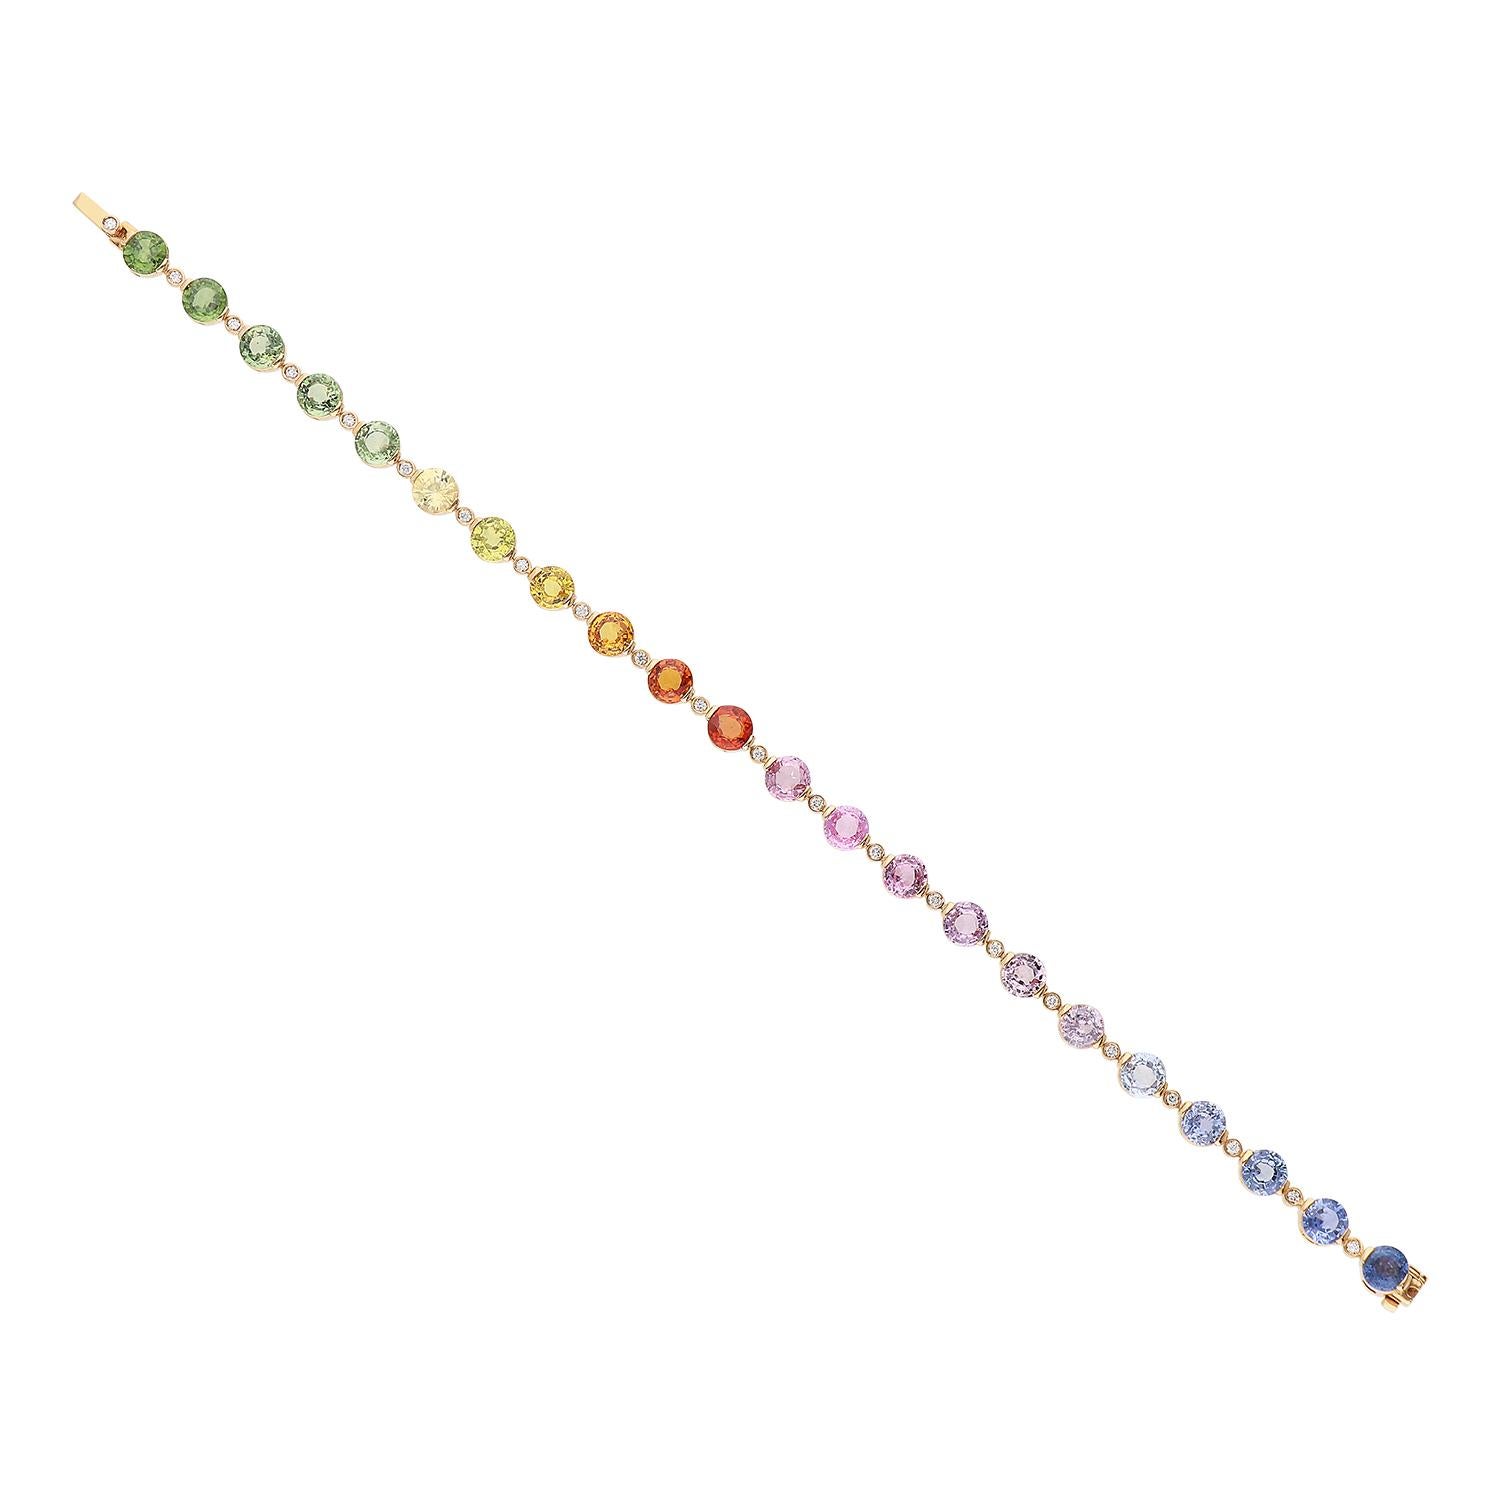 Un élégant bracelet de tennis en or rose 18 carats pesant au total 11,60 grammes, avec des saphirs ronds multicolores, sélectionnés dans une nuance arc-en-ciel pour 14,33 carats. Entre chaque saphir se trouve un diamant de taille brillant, de